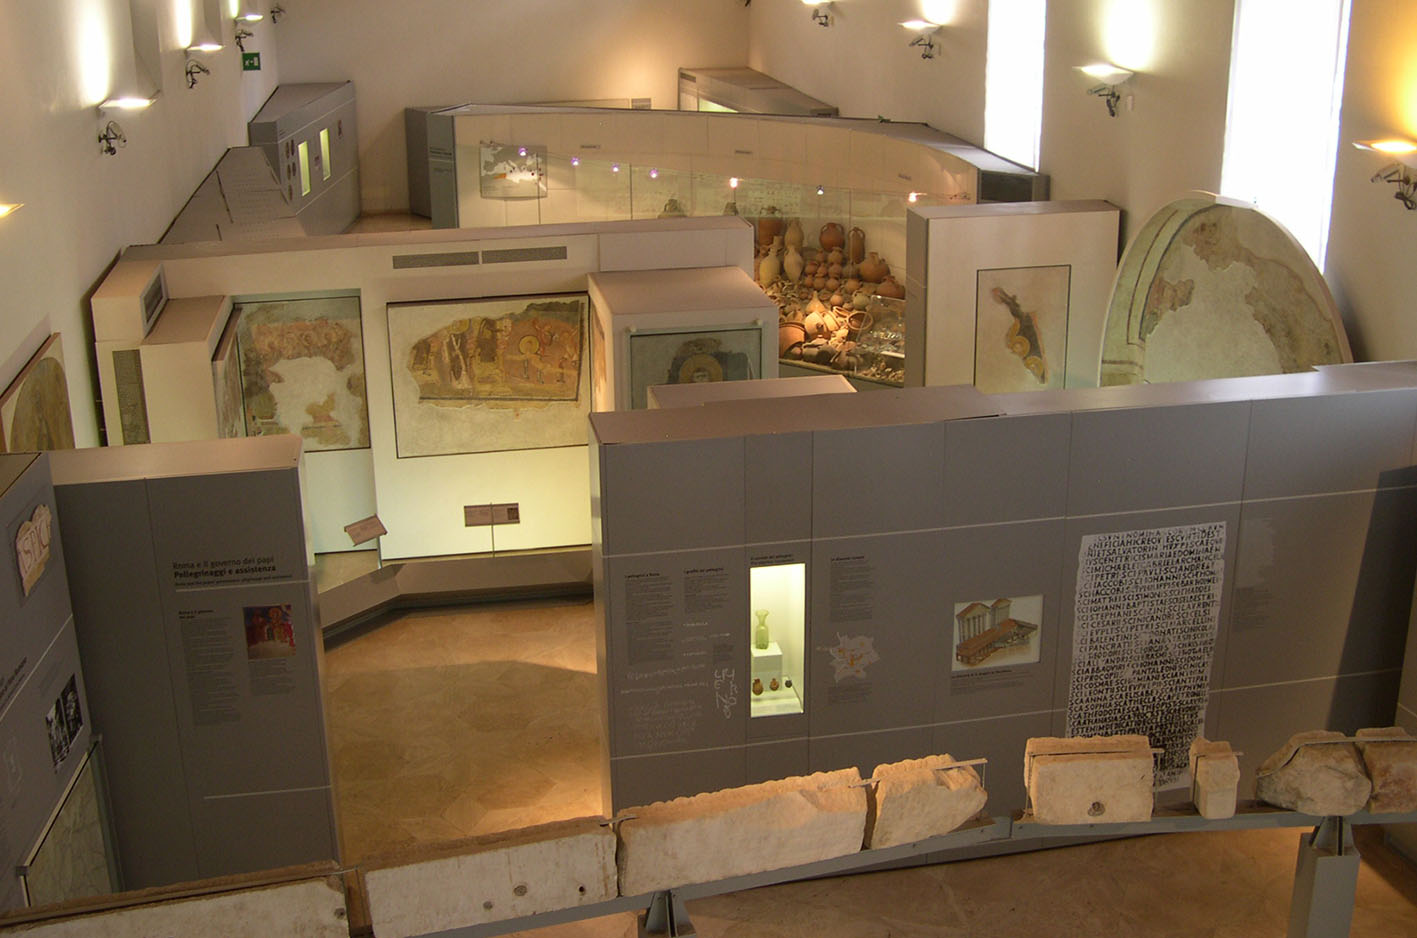 visita a museos y exposiciones de índole arqueológico